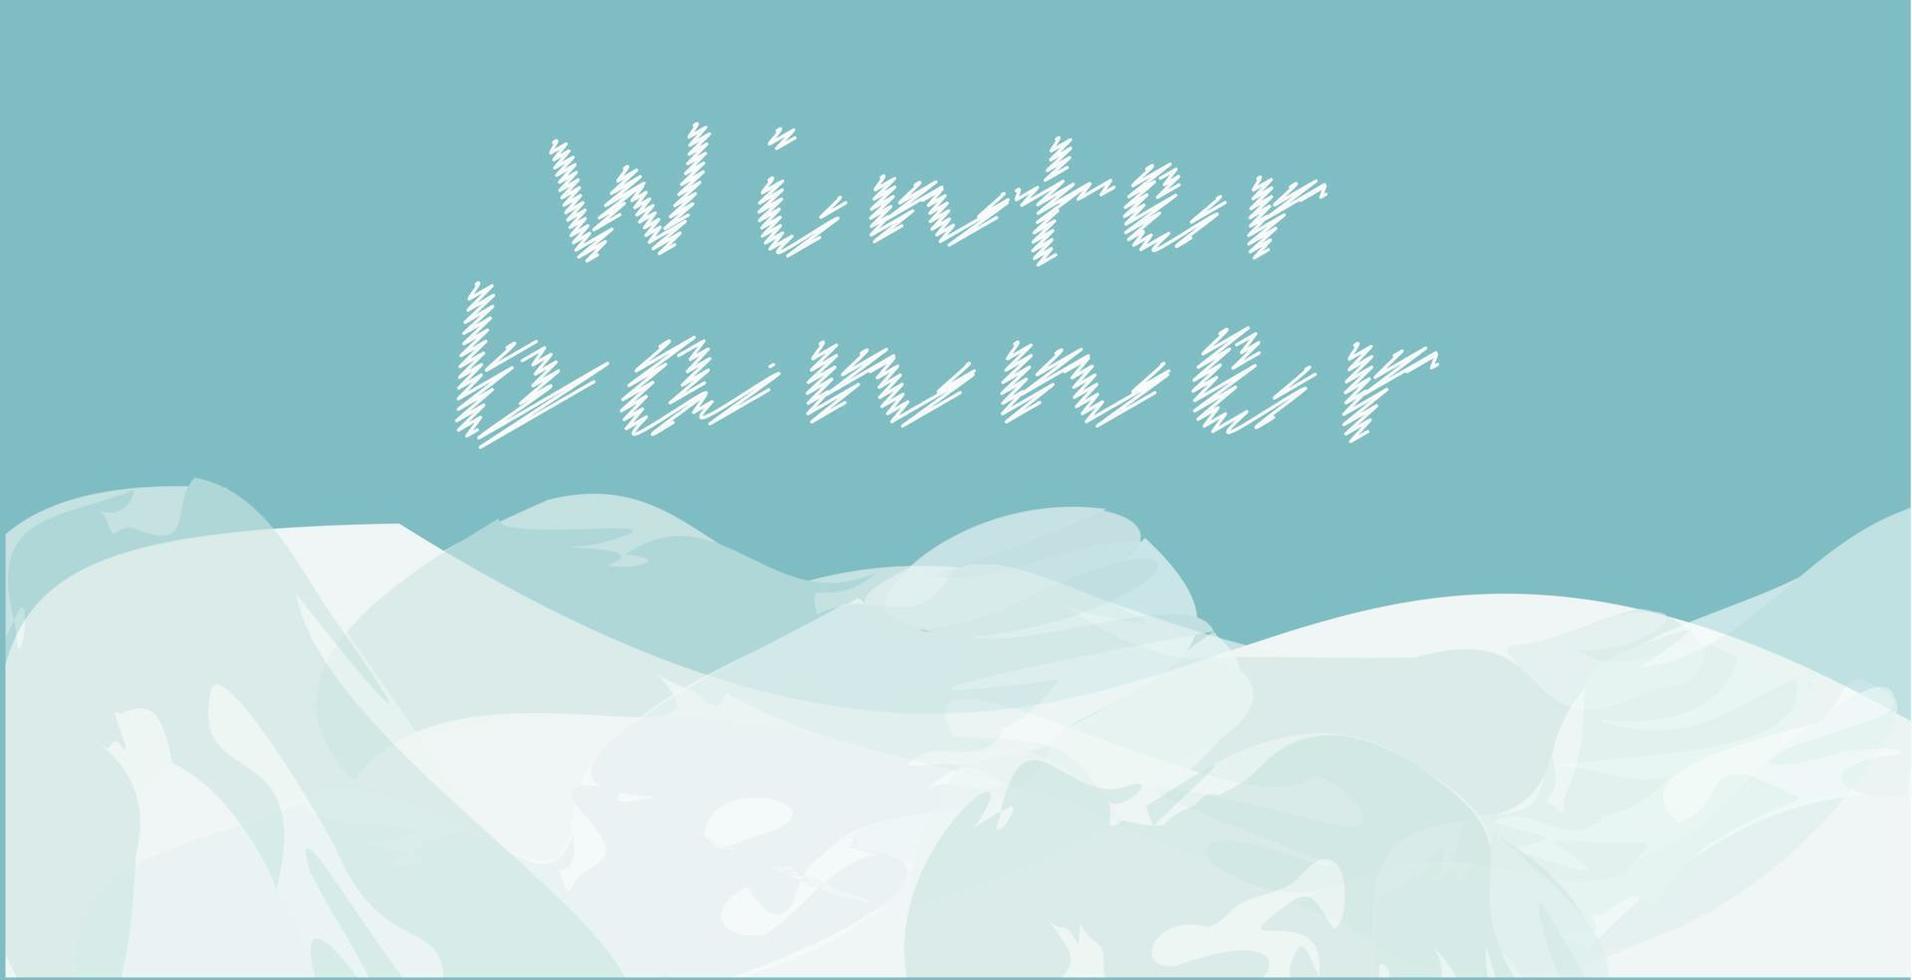 Winter-Web-Banner aquamarin und weiß mit Schneeverwehungen und Textbereich. Vektor-Illustration. vektor